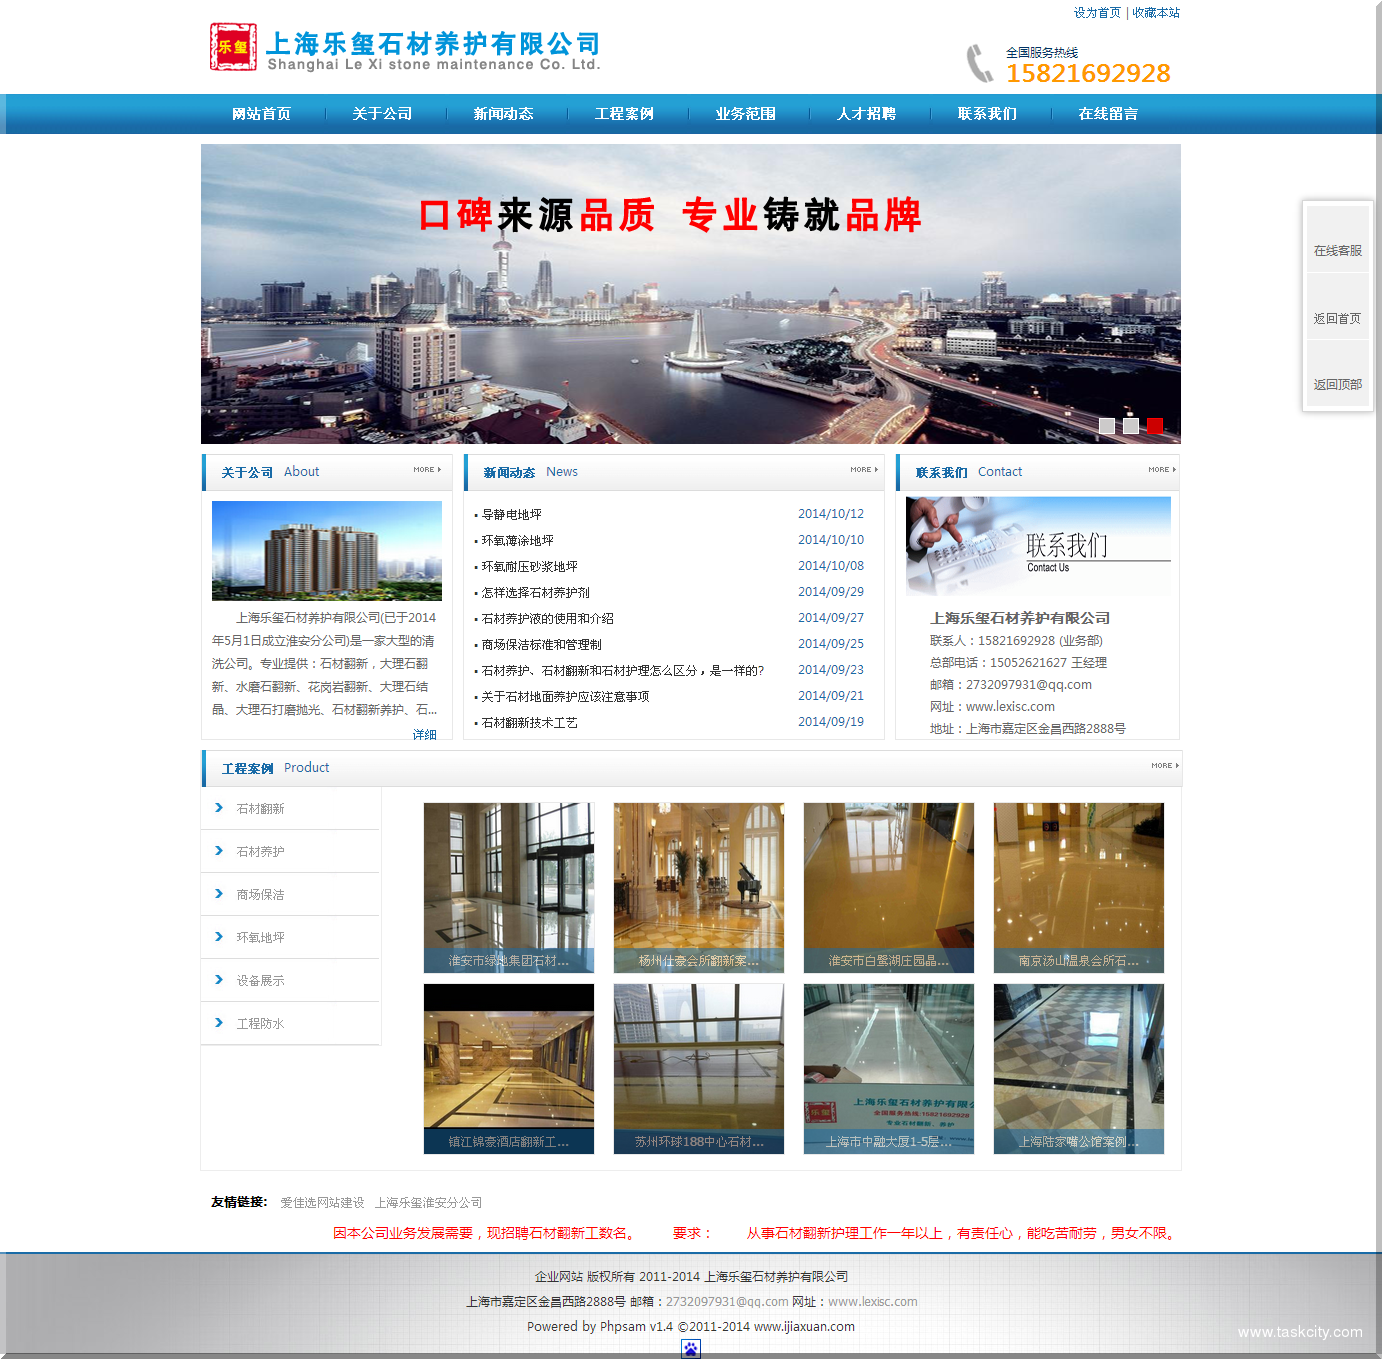 专业上海石材翻新,专业上海石材养护,上海石材翻新，上海石材养护，上海环氧地坪，上海商场保洁，上海乐玺